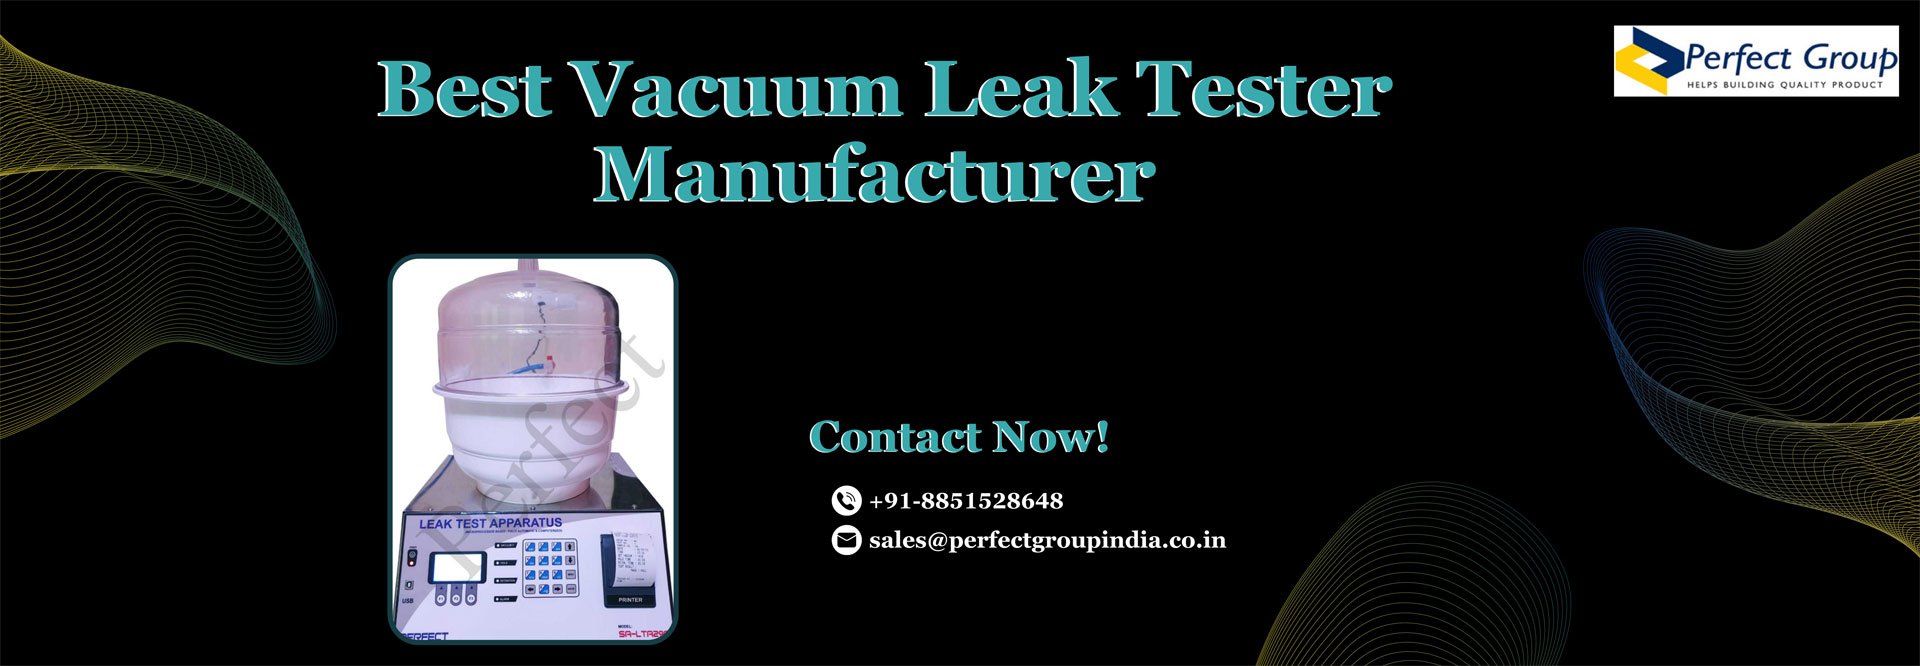 Best Vacuum Leak Tester Manufacturer